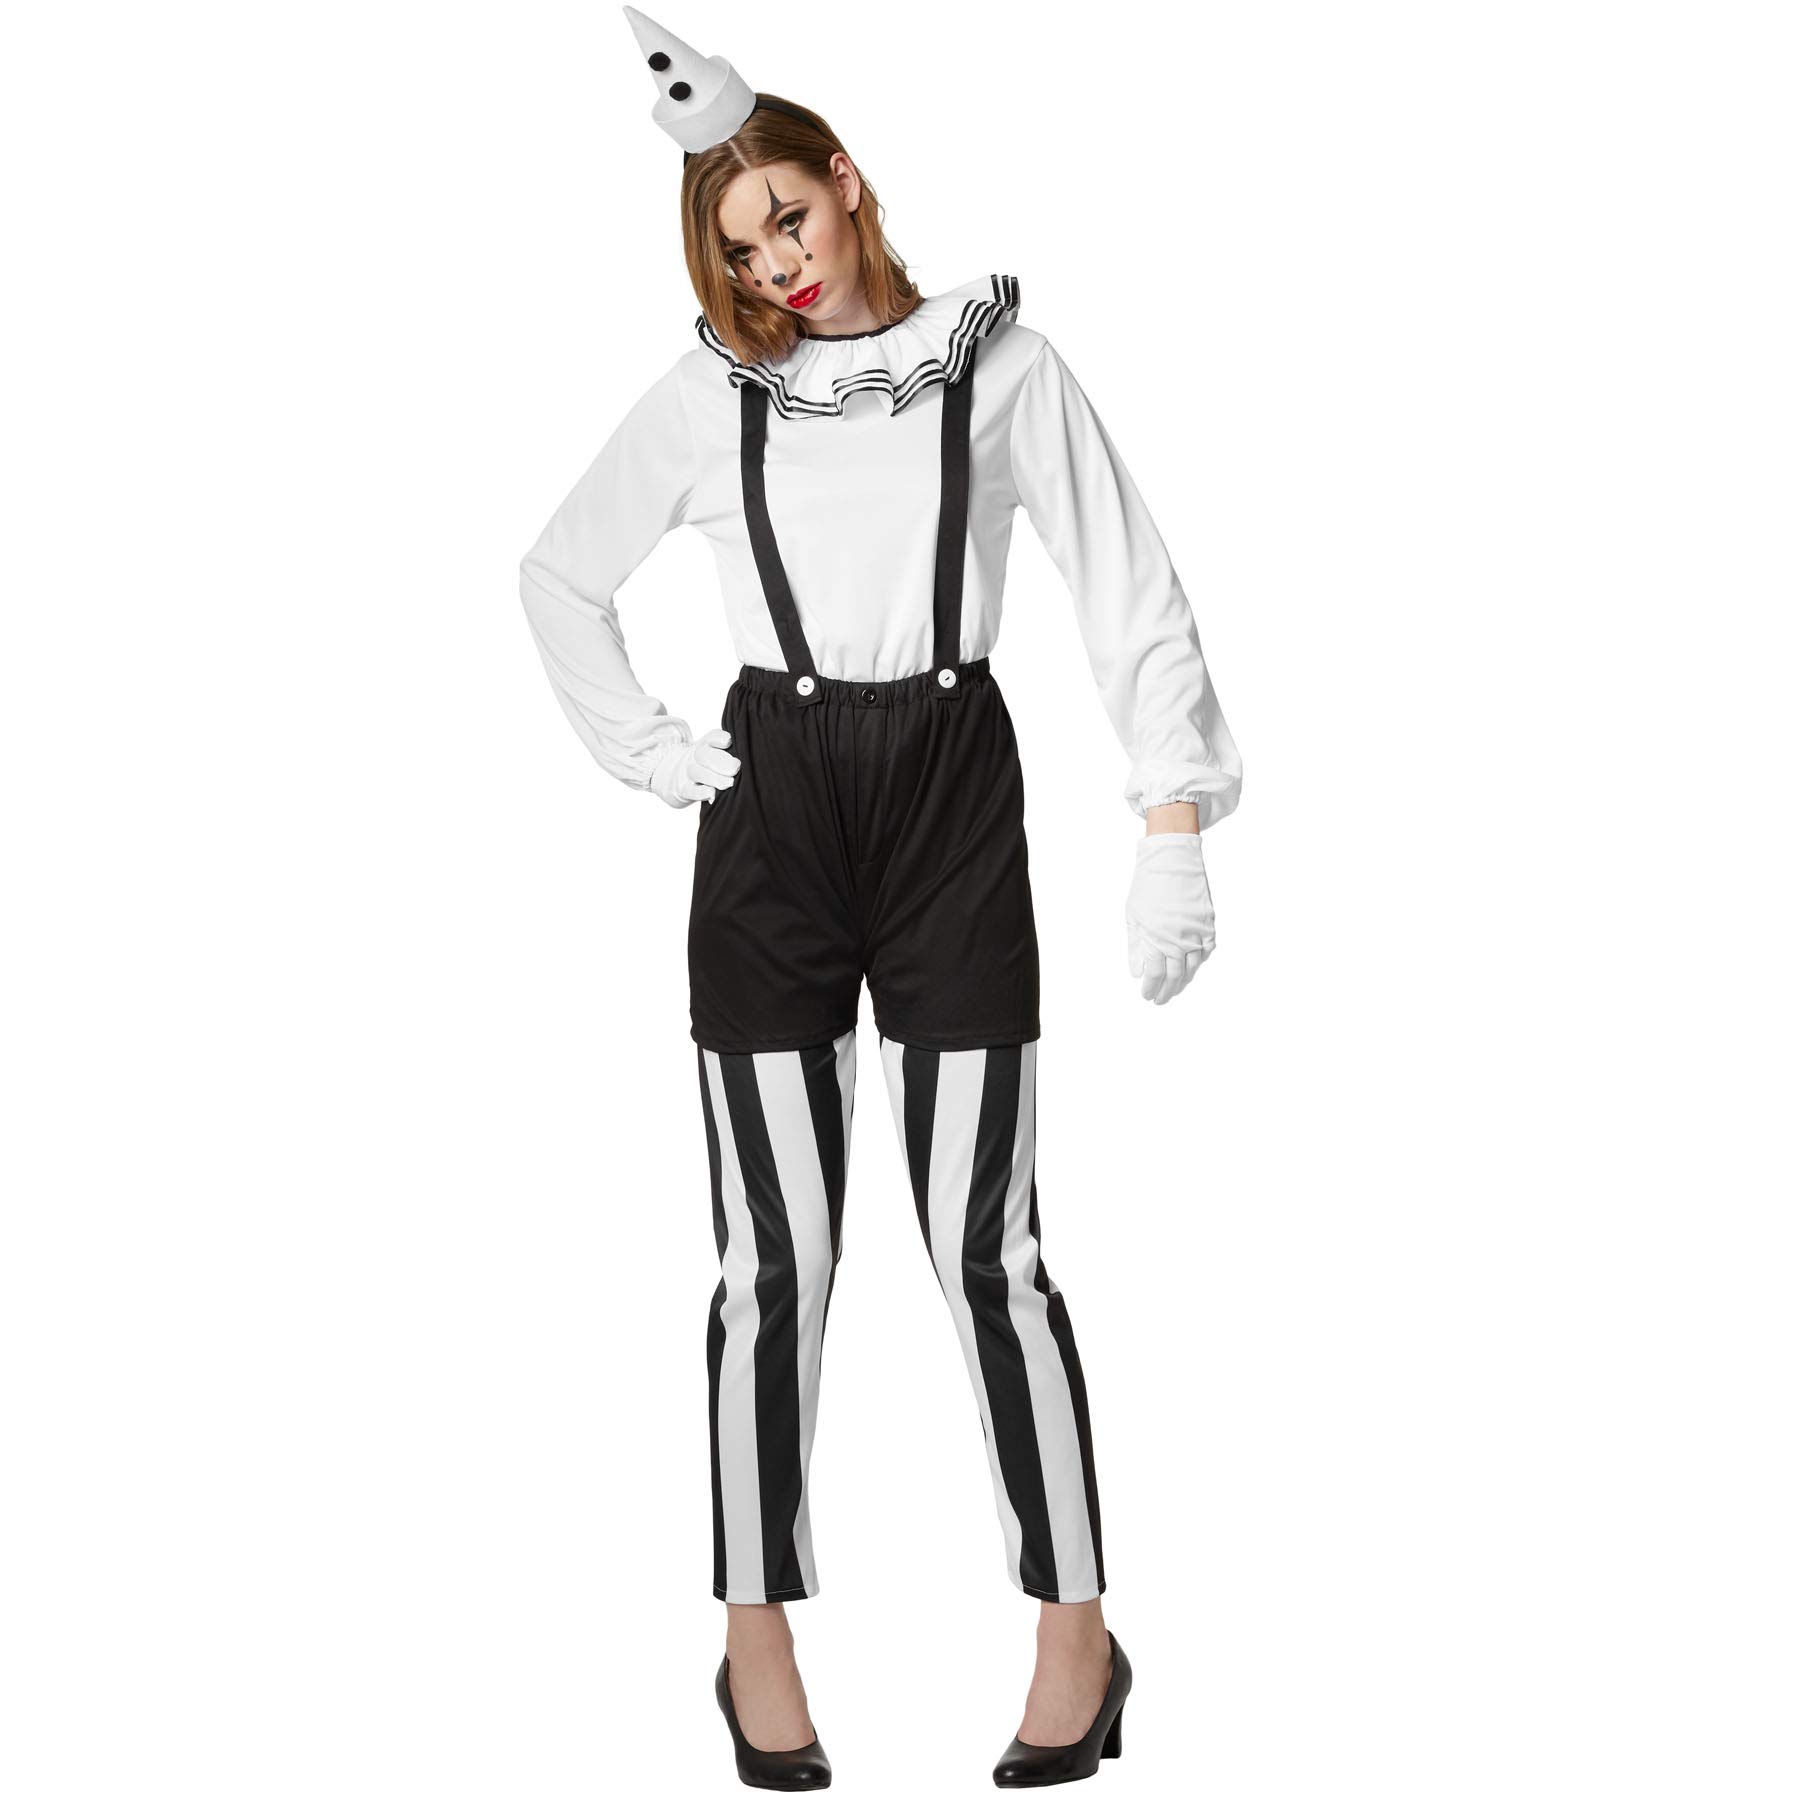 dressforfun 901034 Frauenkostüm Clown, Damen Pantomime Kostüm, sechsteilige Harlekin Verkleidung, Pierrot Kostüm für Karneval Fasching Halloween, schwarz weiß - diverse Größen - (M | Nr. 304596)